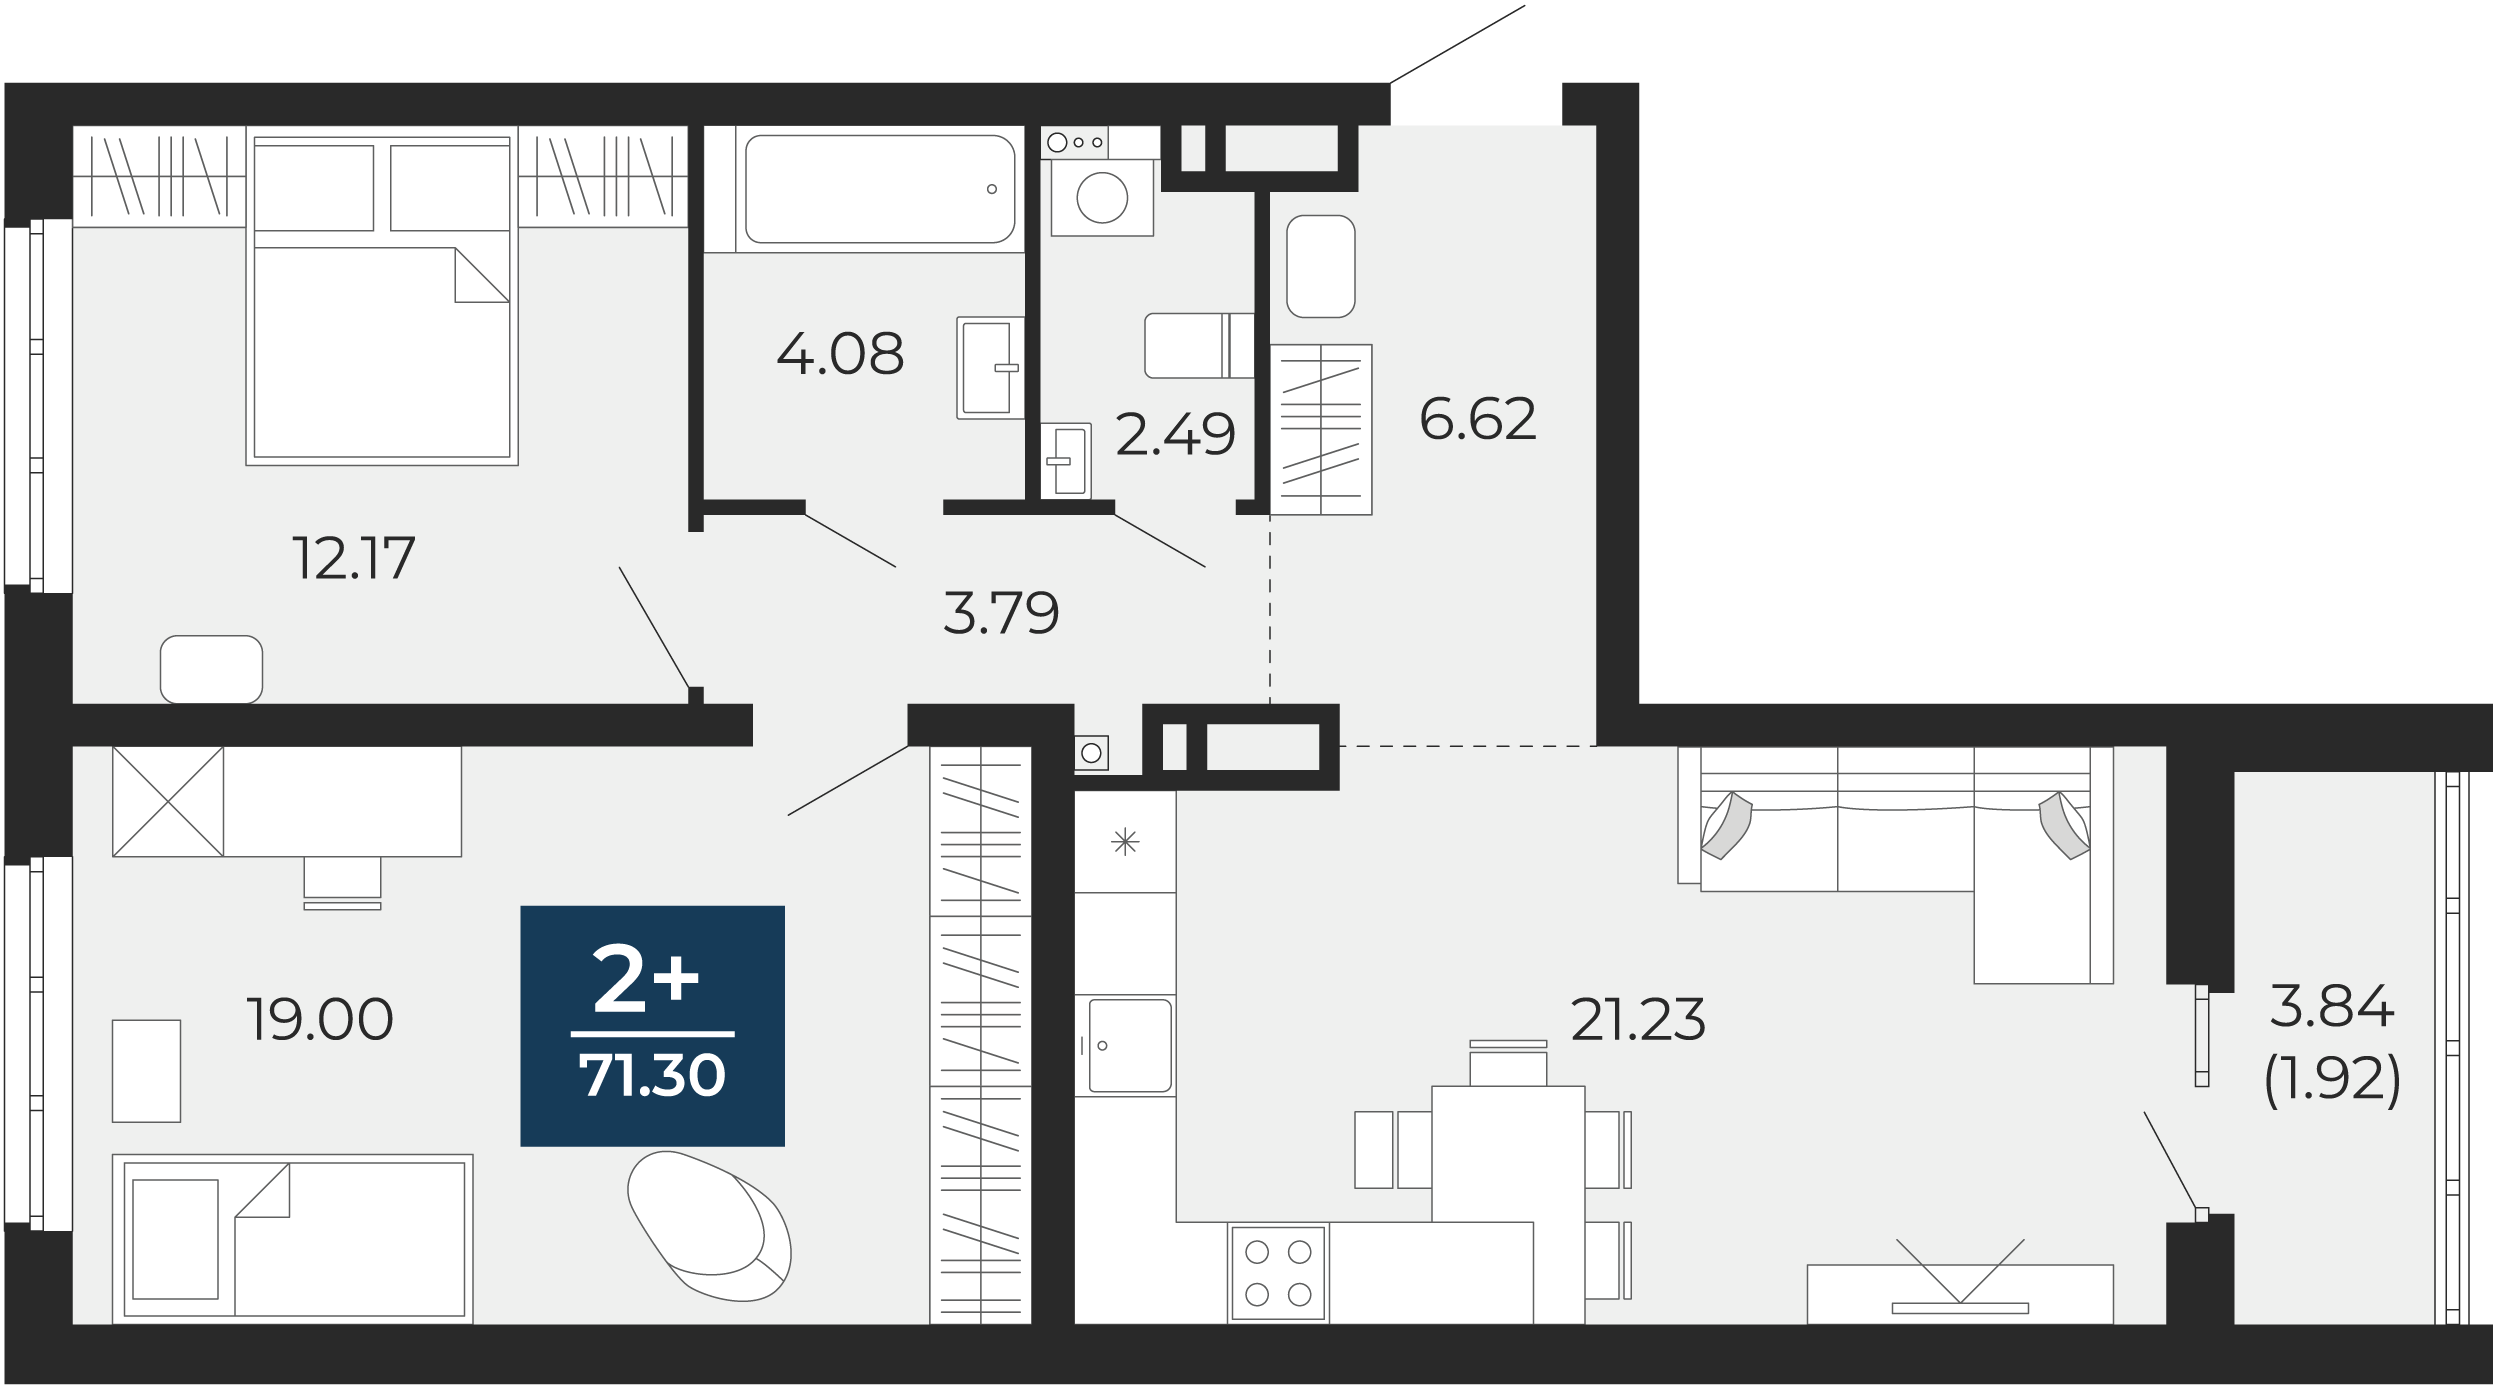 Квартира № 93, 2-комнатная, 71.3 кв. м, 8 этаж